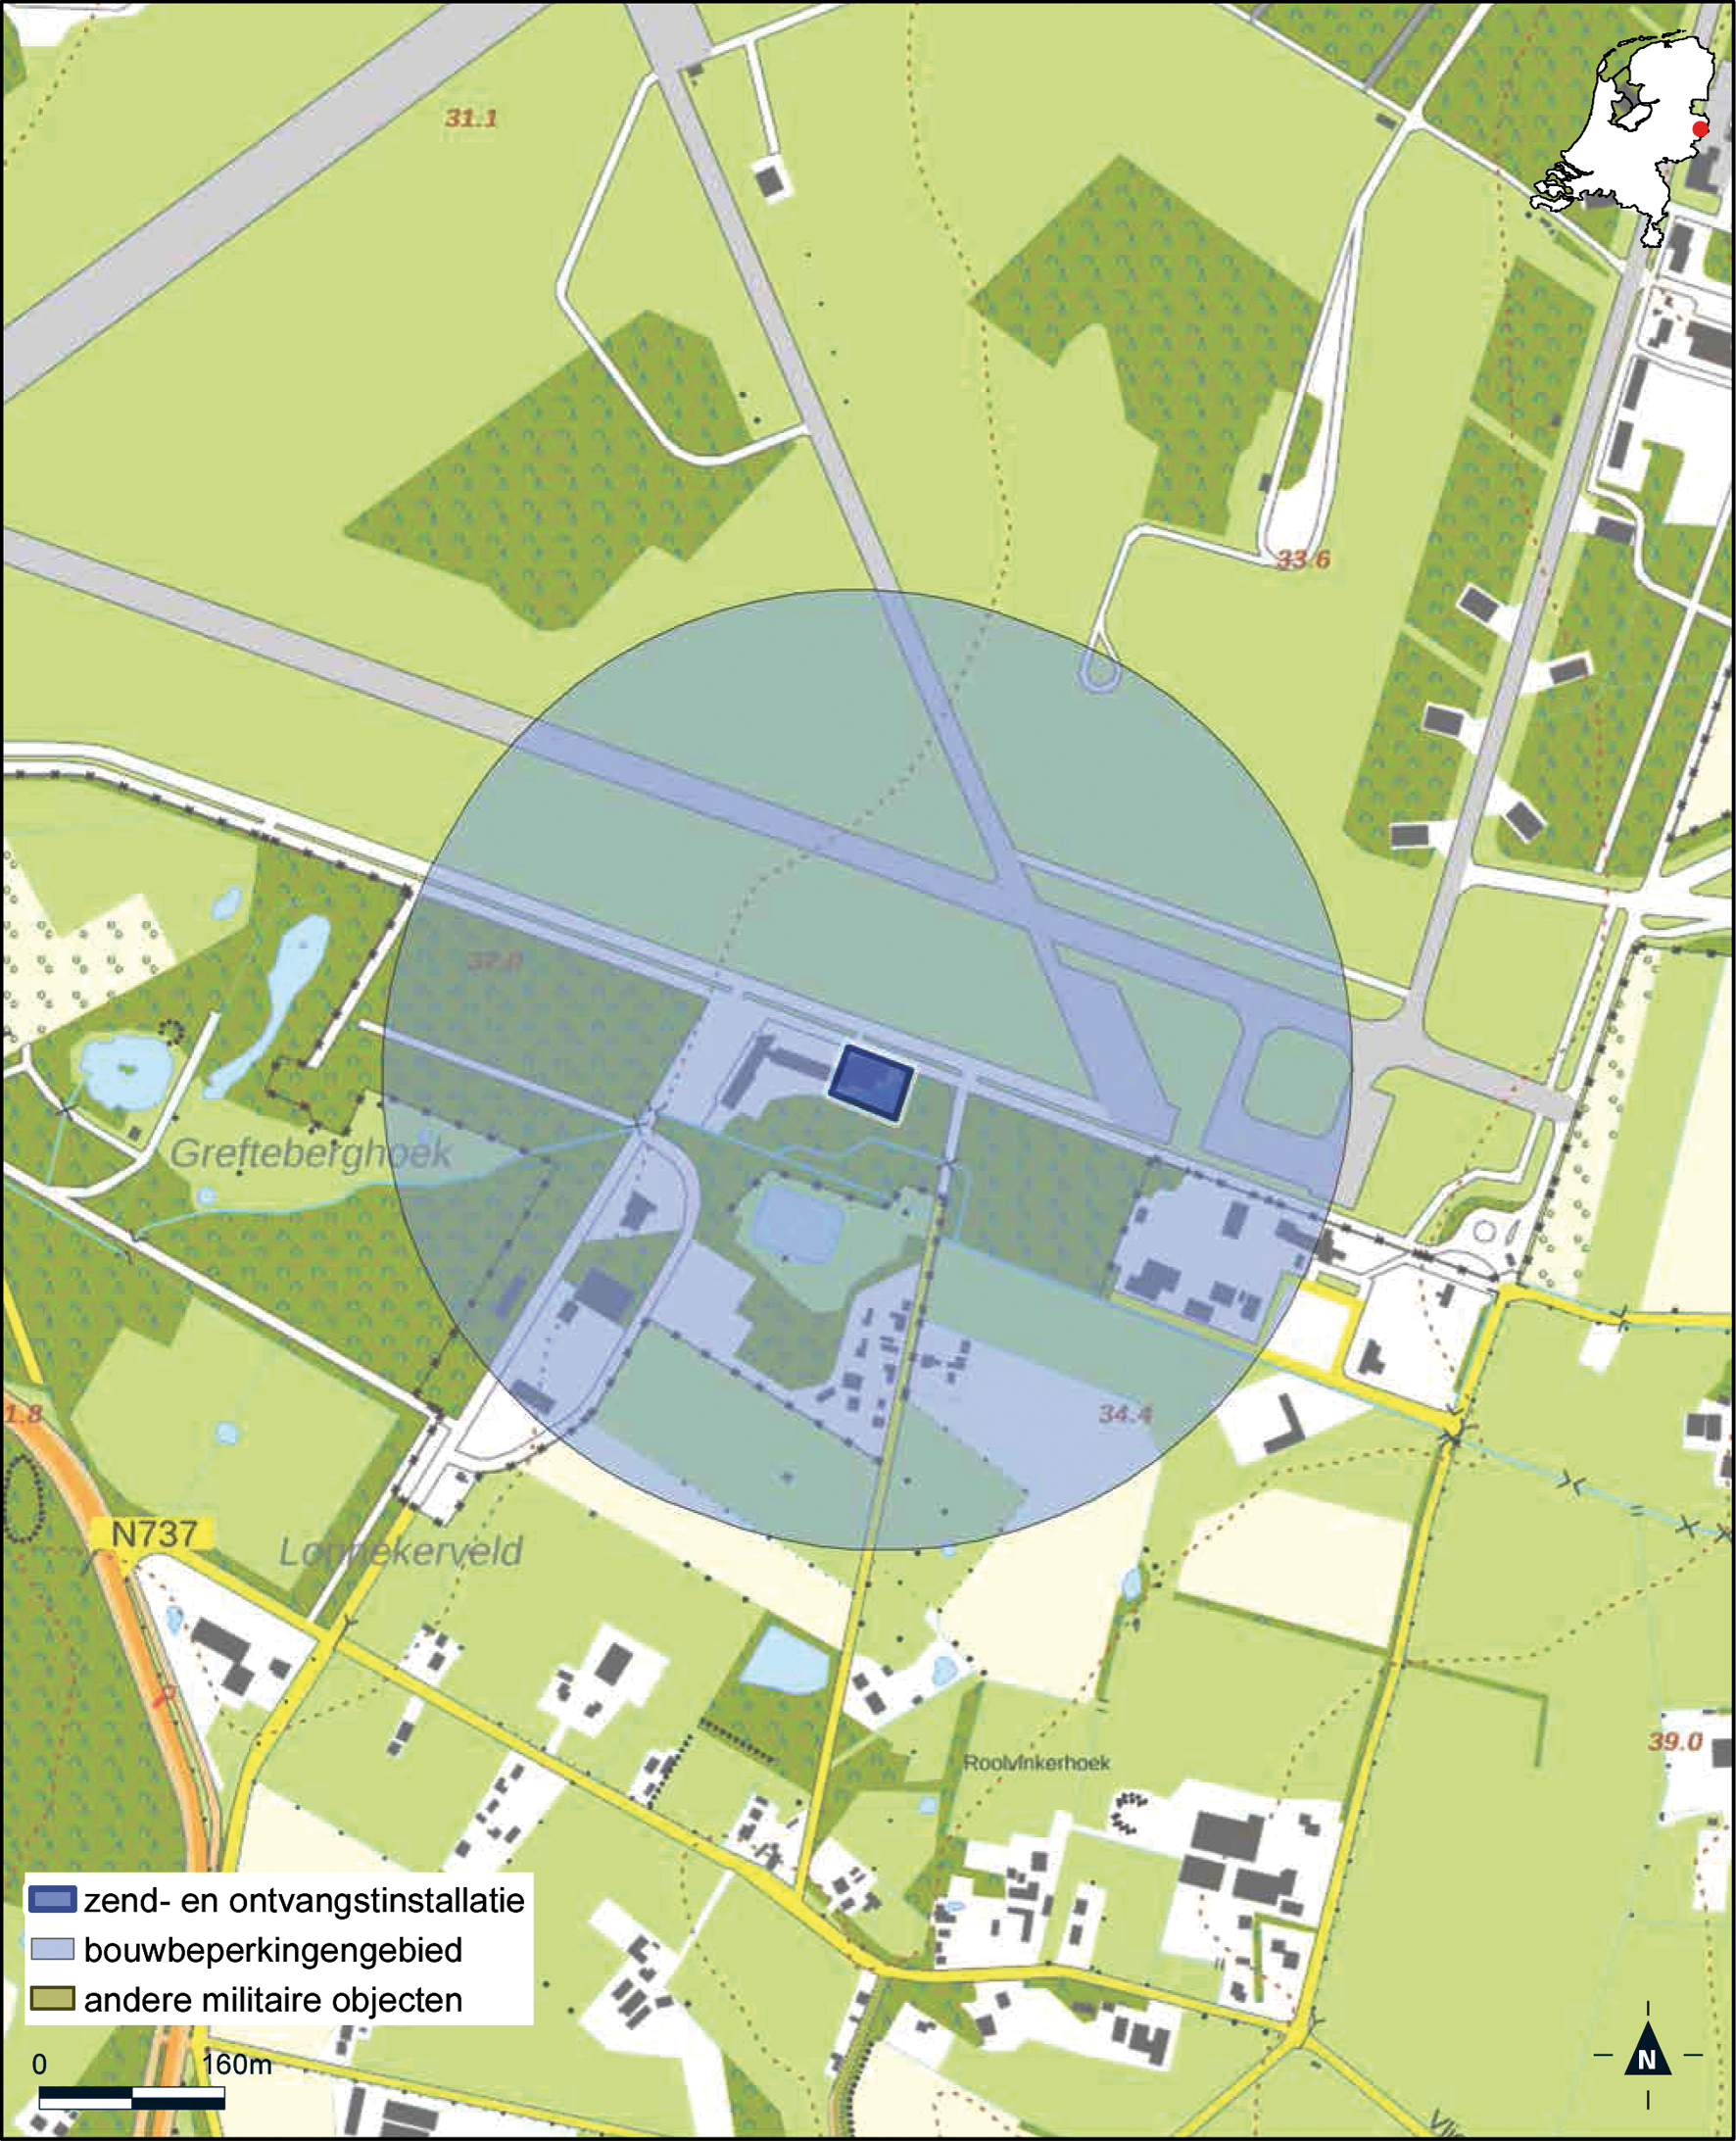 Kaart zend- en ontvangstinstallatie buiten militair luchtvaartterrein complex Twente